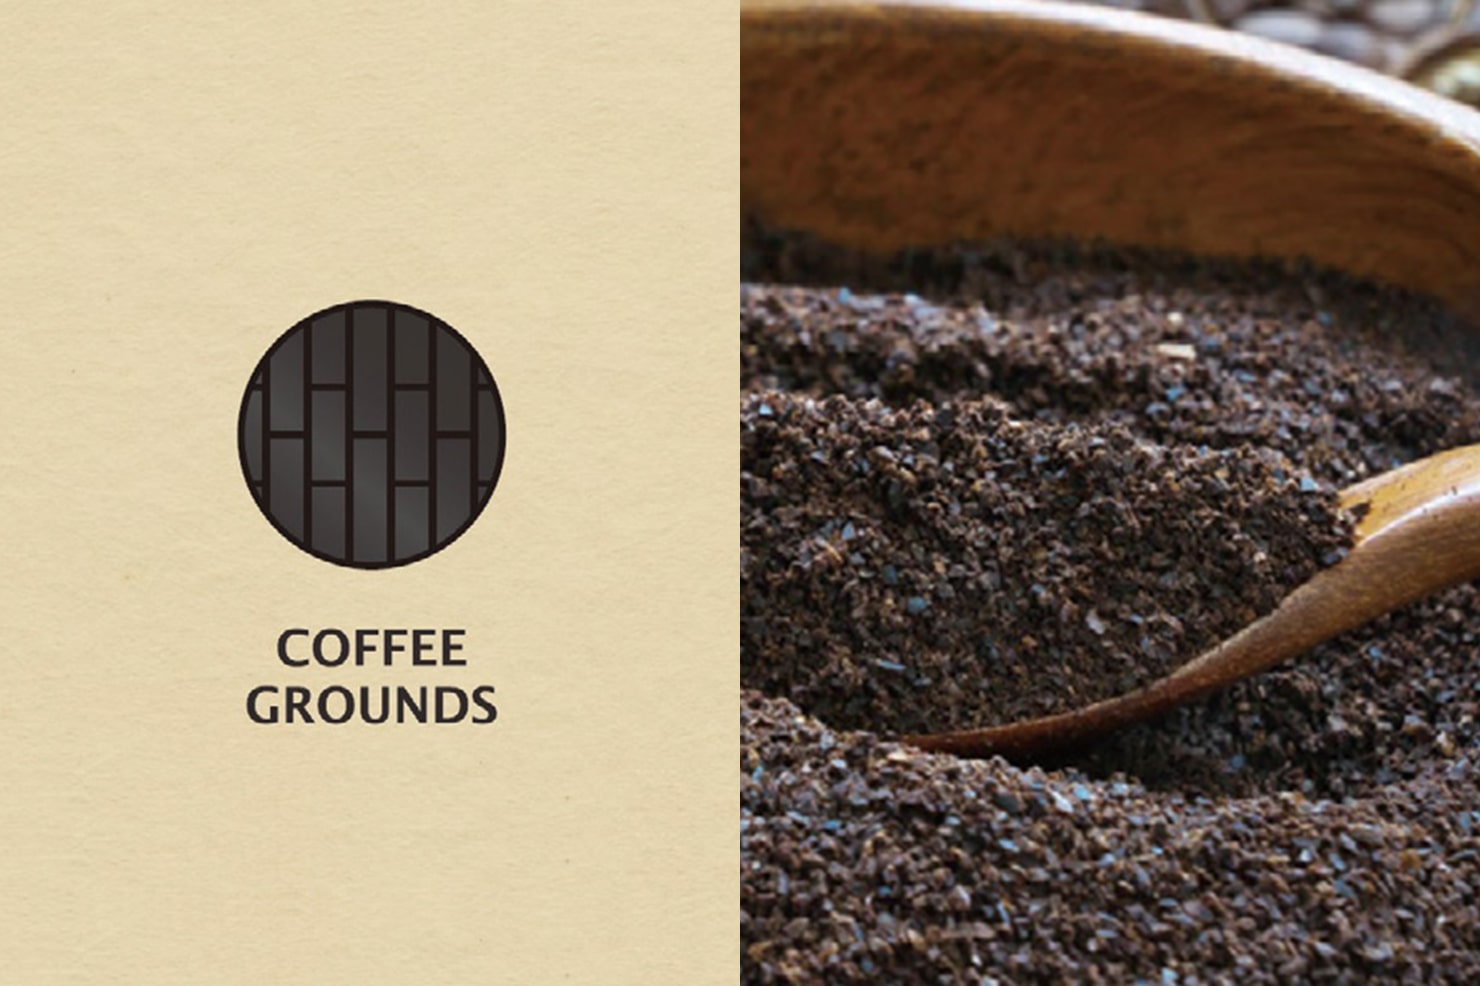 COFFEE GROUNDS